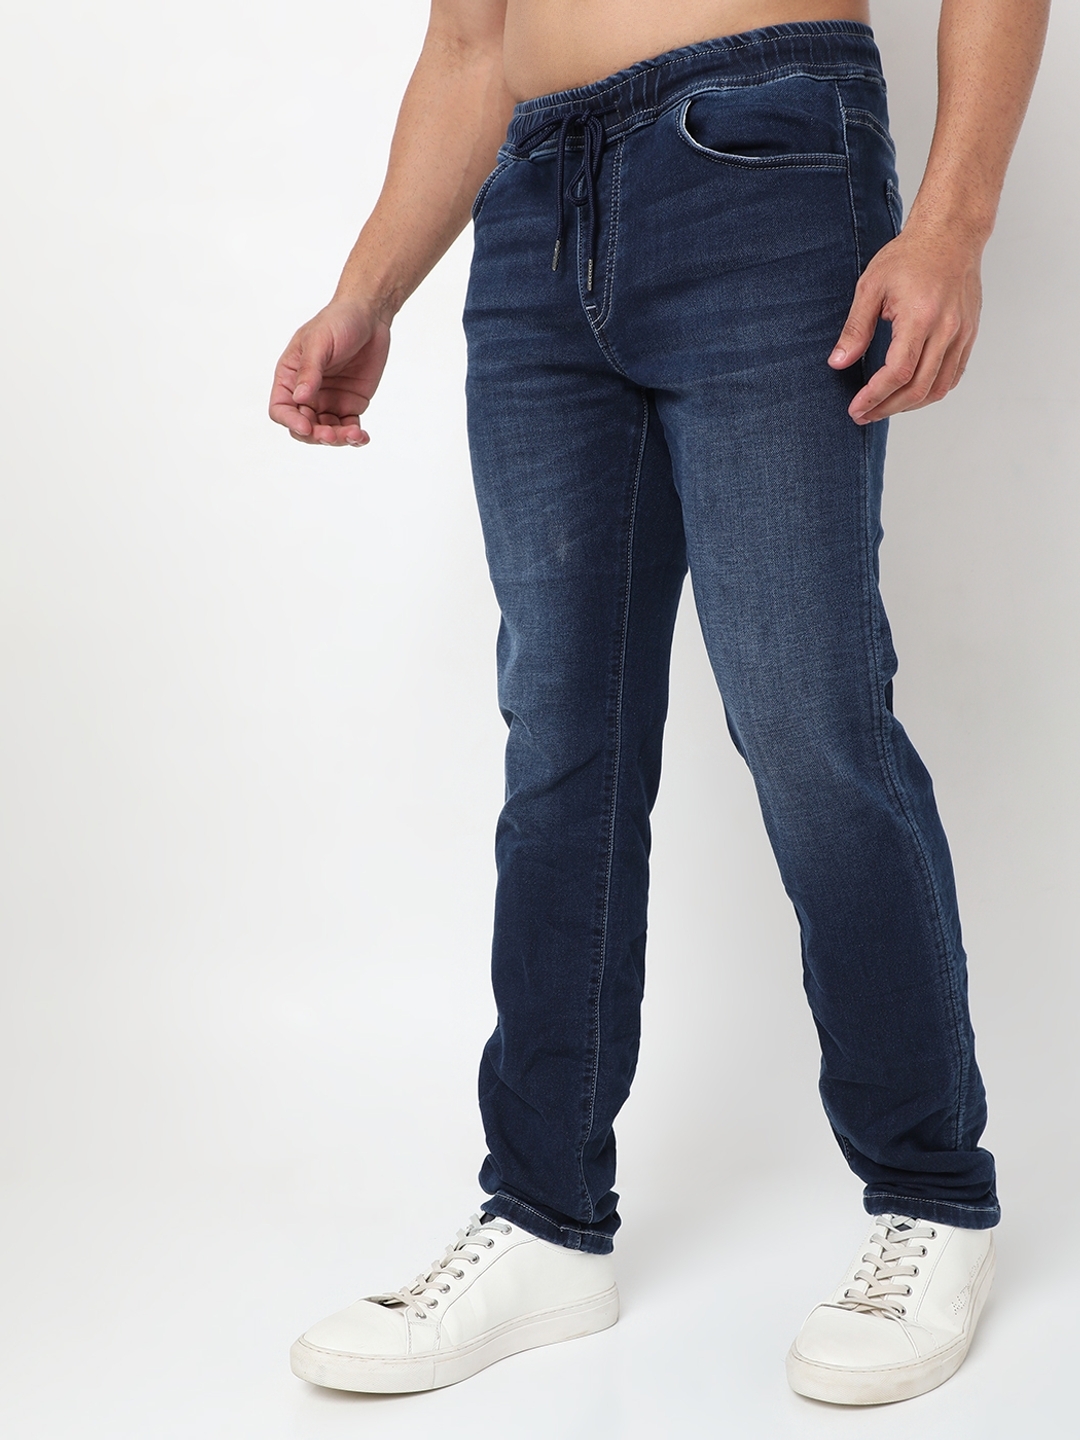 MEN'S SLOW MOTION IN Jeans